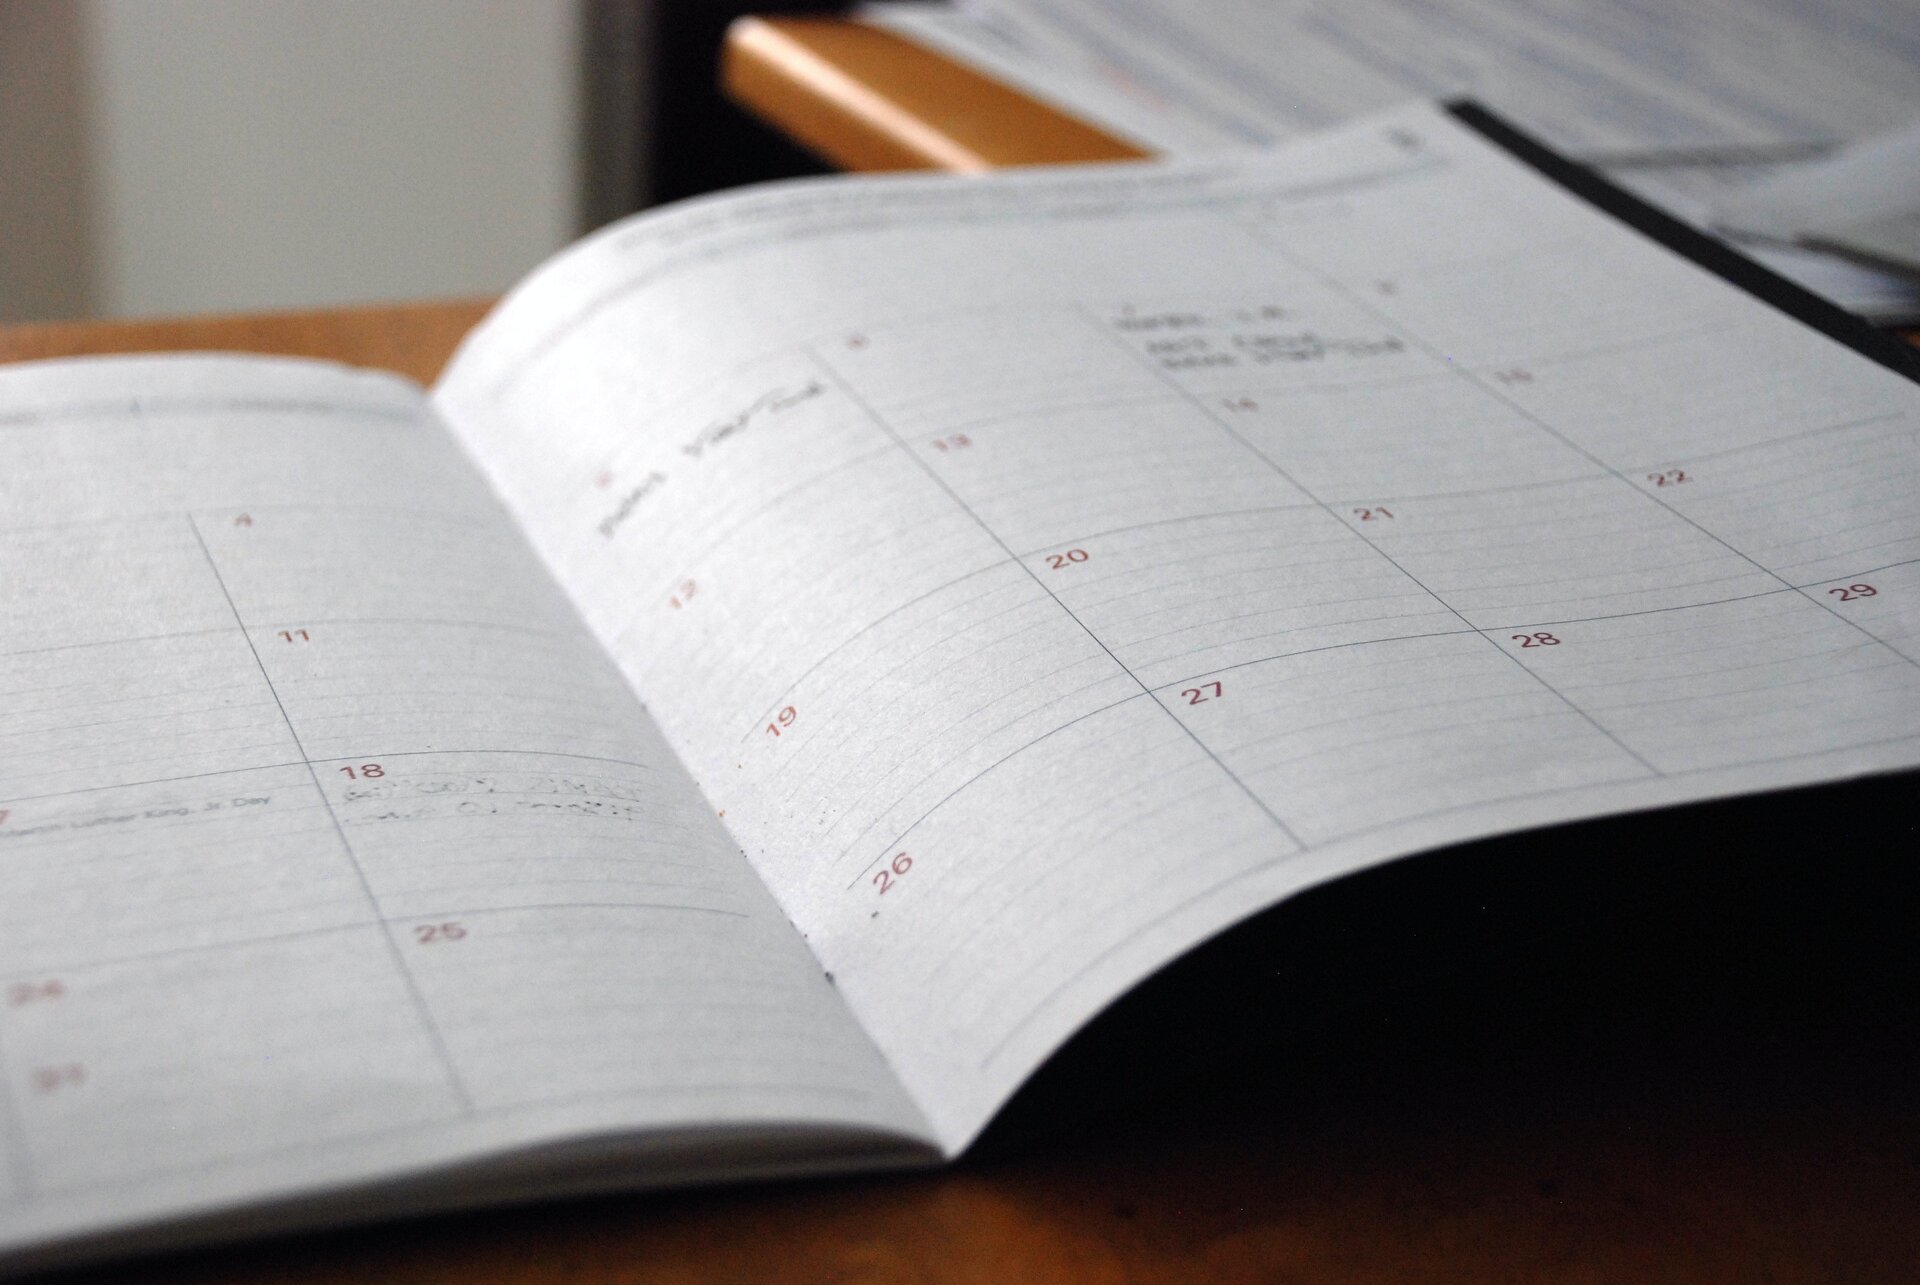 Calendar of meetings